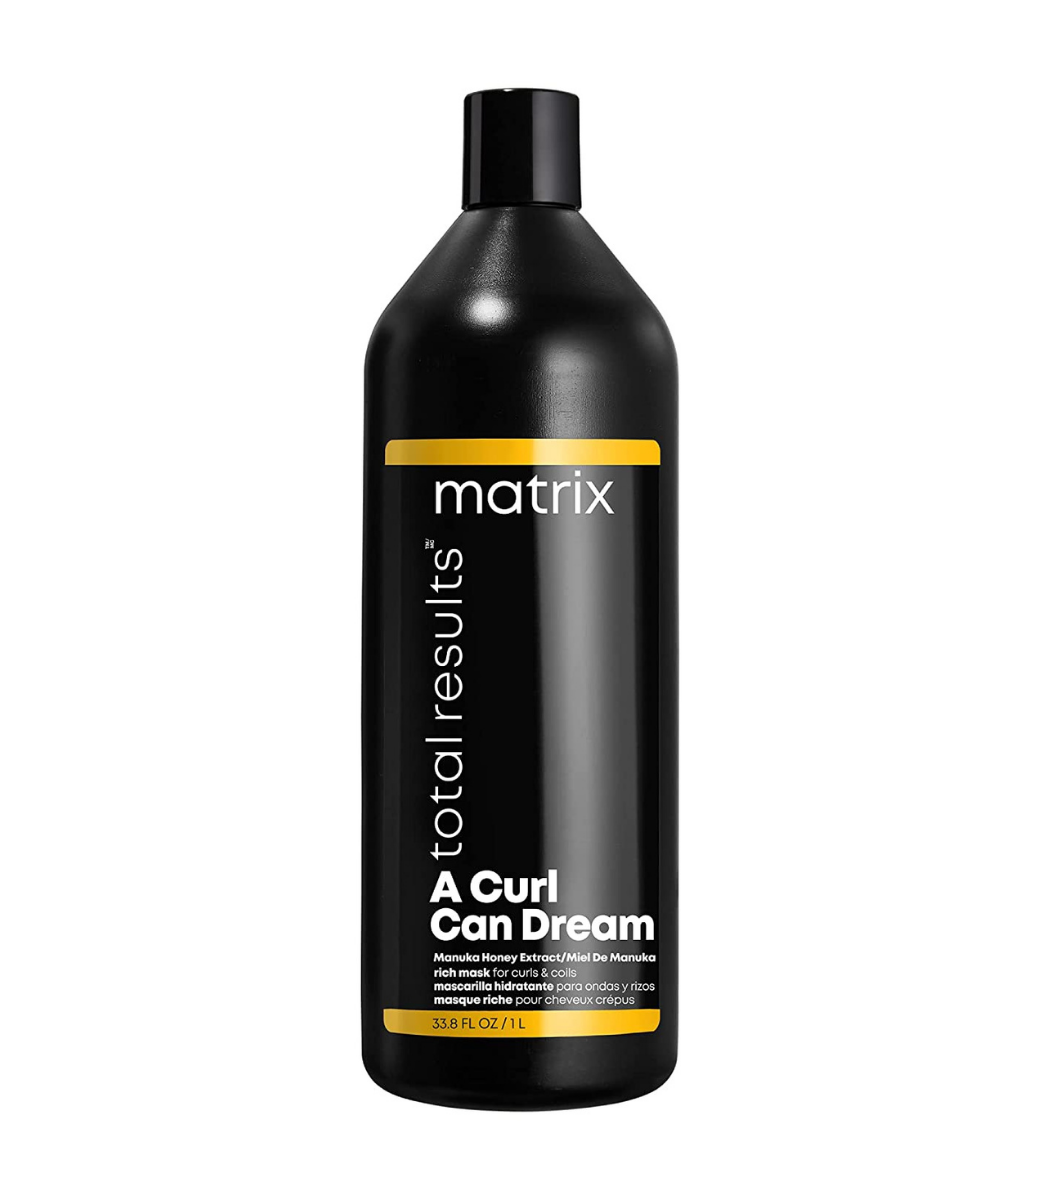 MATRIX PROFESSIONAL MATRIX - A Curl Can Dream Rich Mask - 33.8 fl oz / 1Lt